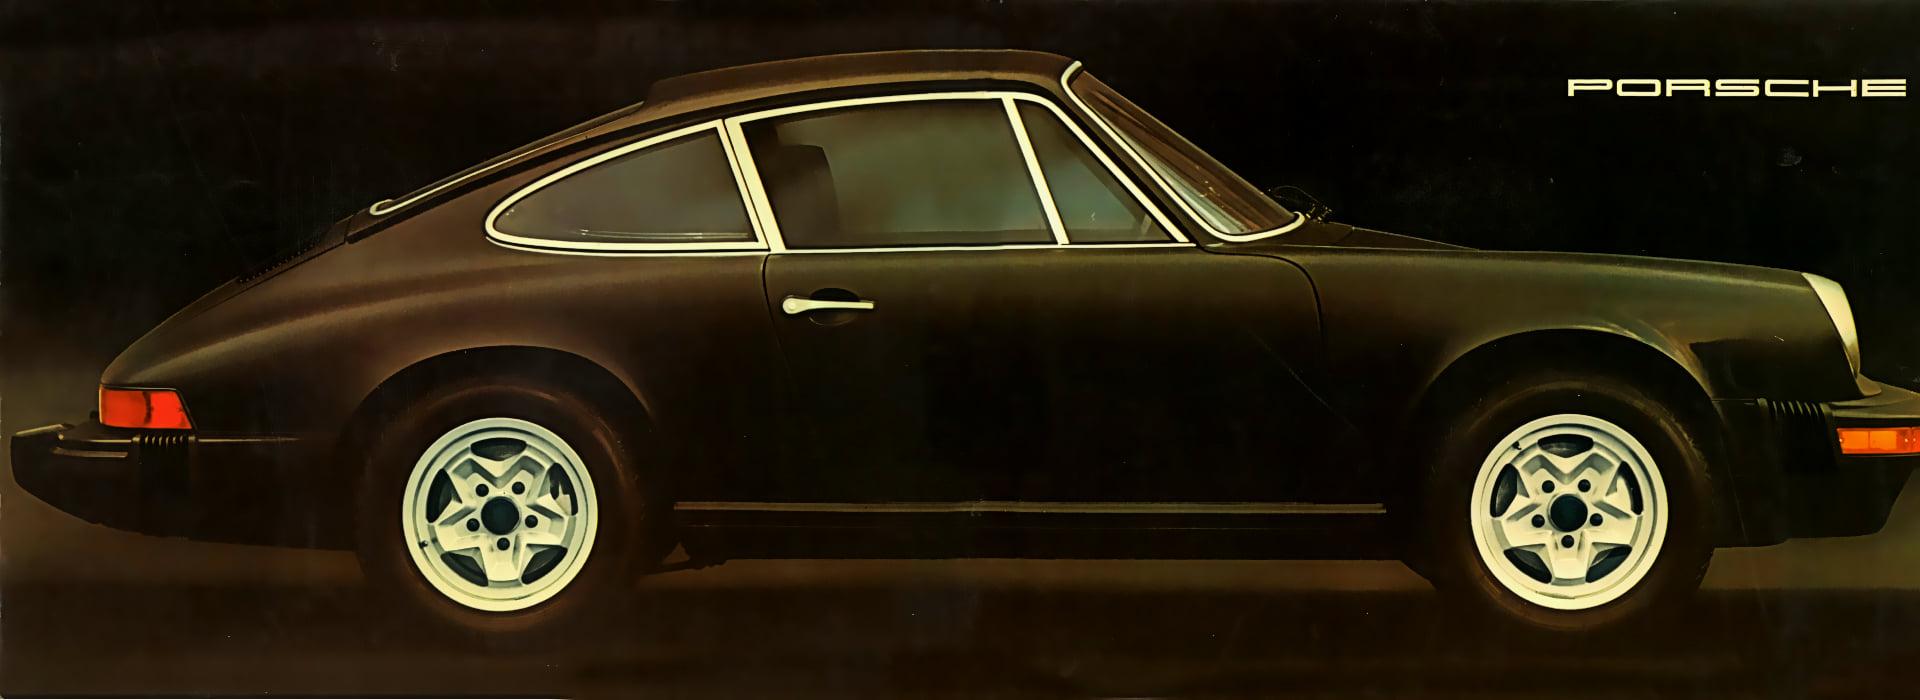 Рекламный буклет Porsche 911 US market